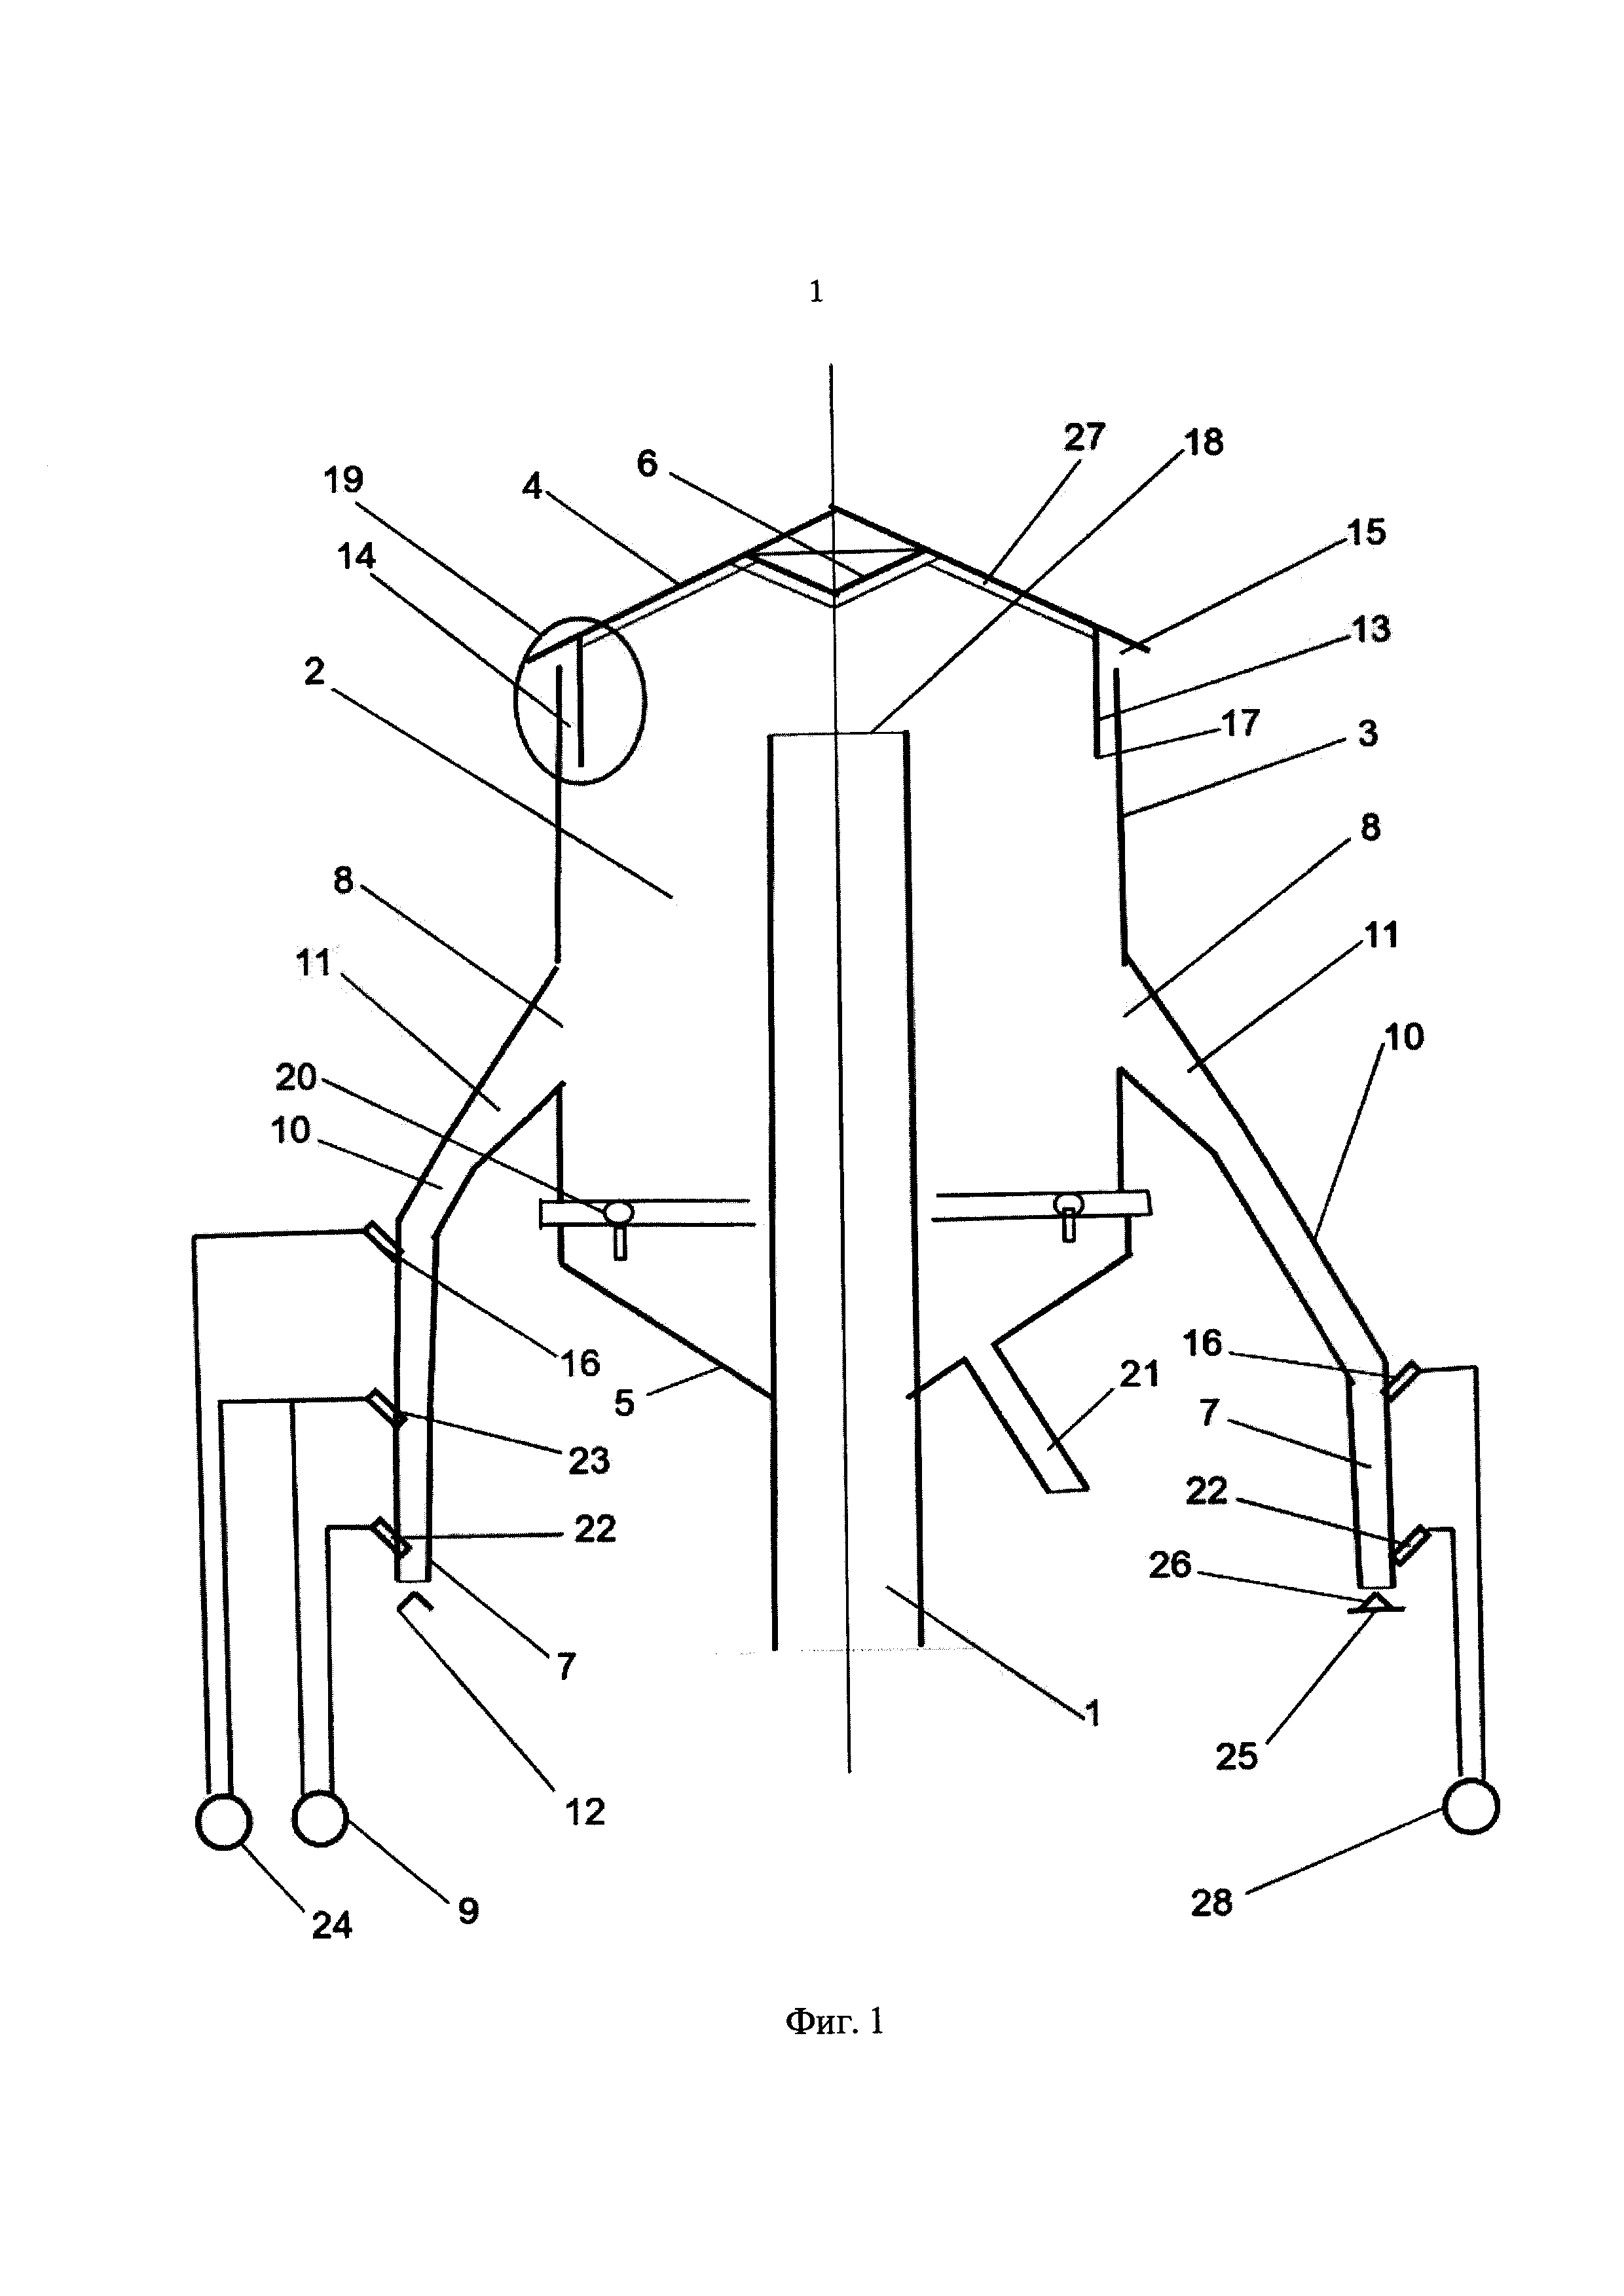 Распределитель катализатора для системы реактор-регенератор дегидрирования парафиновых углеводородов С-С с кипящим слоем